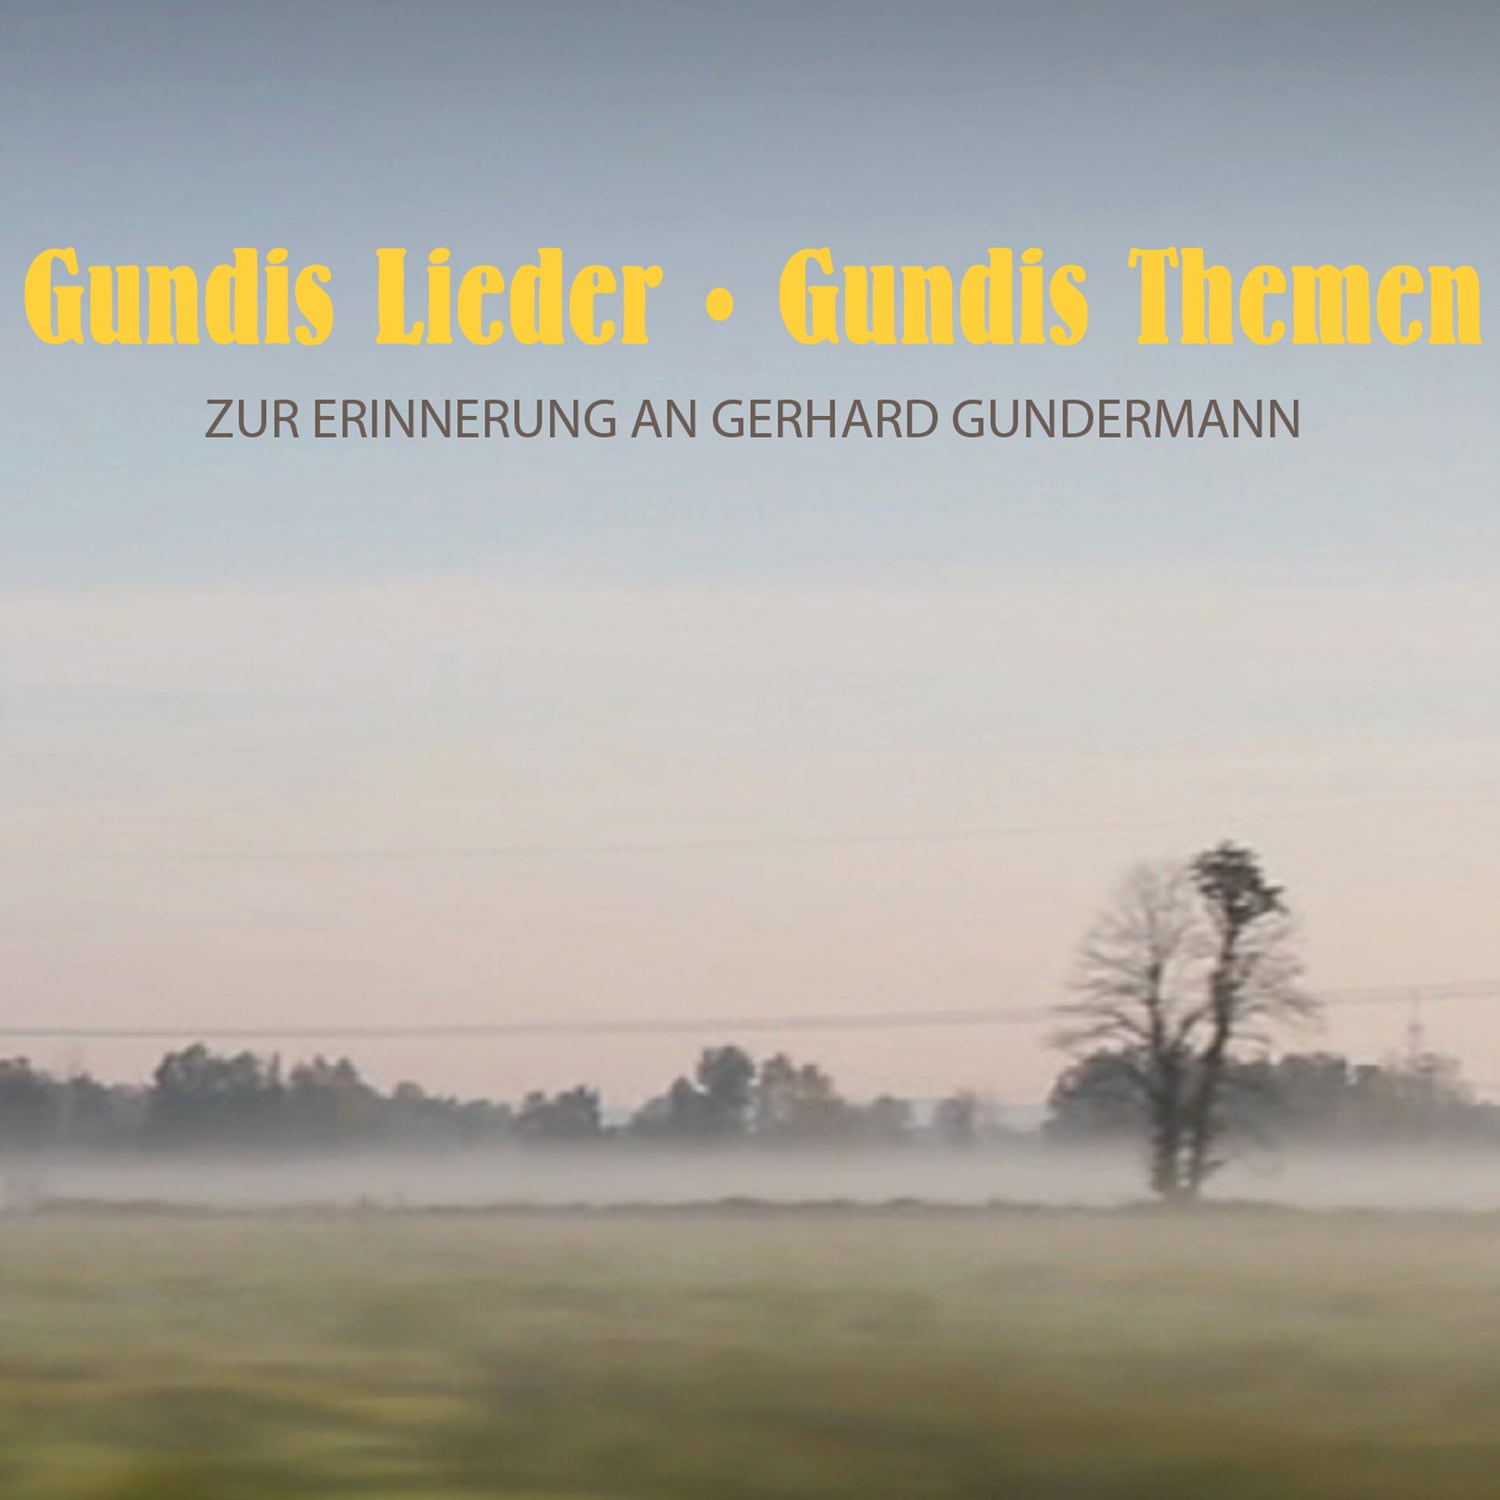 Gundis Lieder Gundis Themen - Gerhard Gundermann